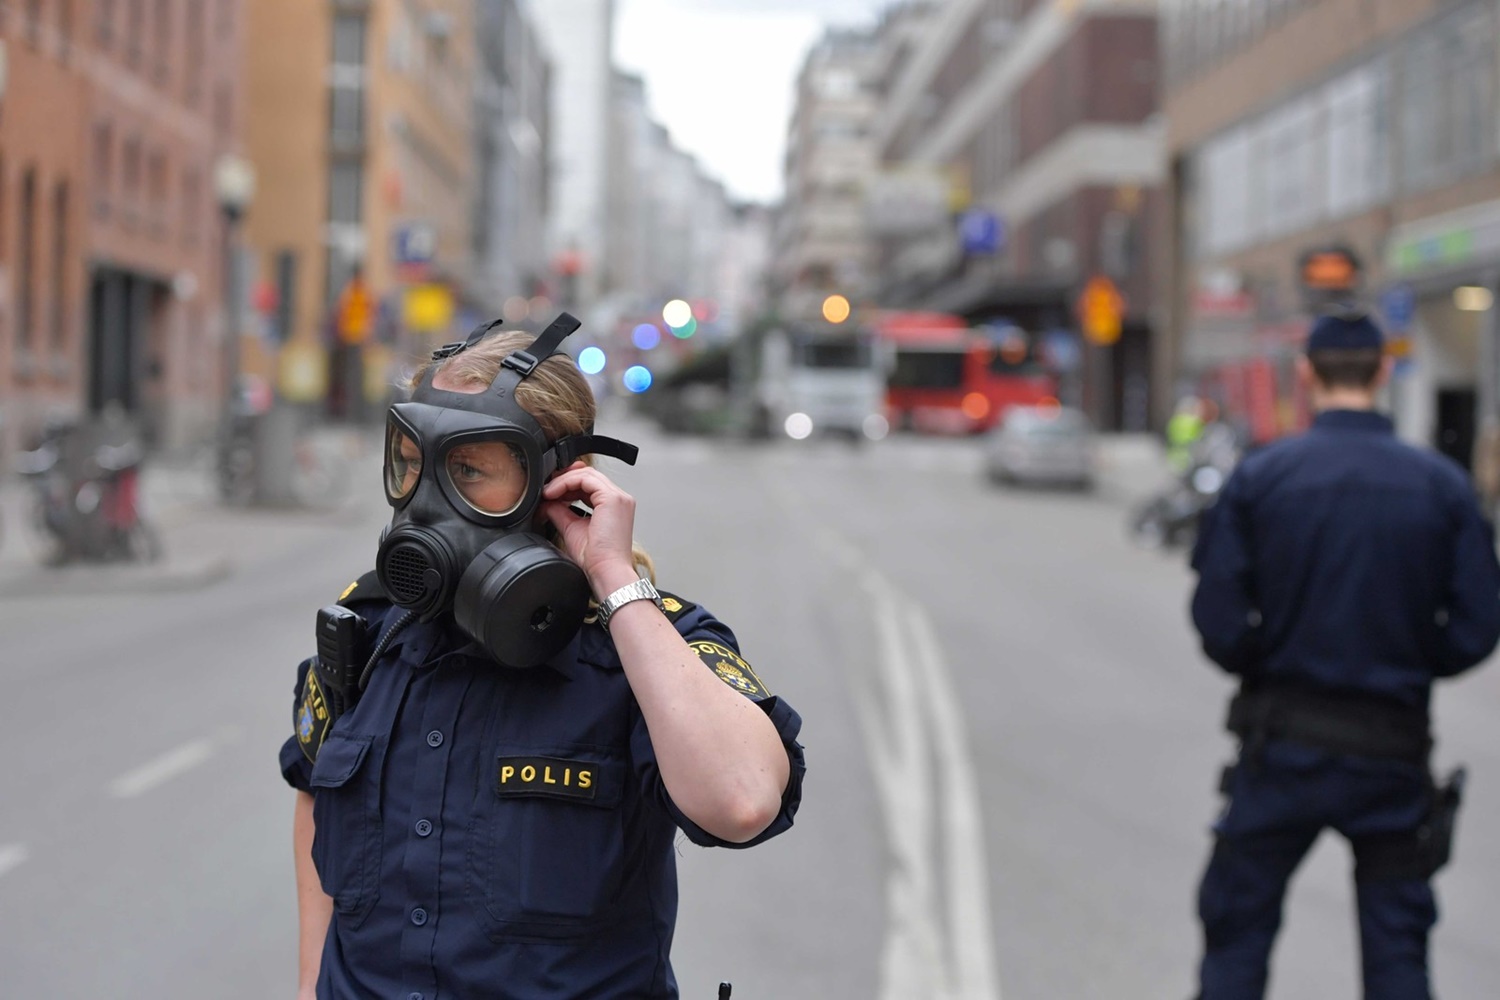 Caminhão bate e entra em loja de departamento, deixando mortos e feridos na cidade de Estocolmo, Suécia 